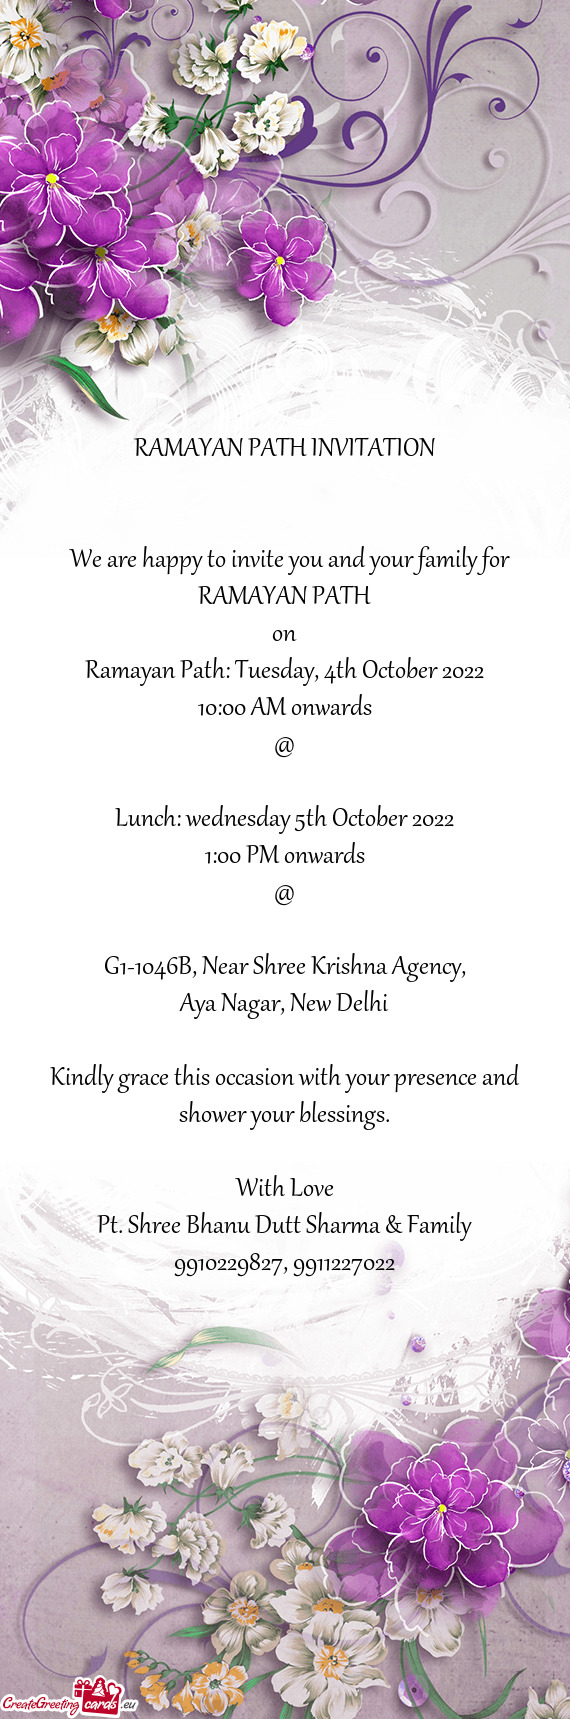 Ramayan Path: Tuesday, 4th October 2022